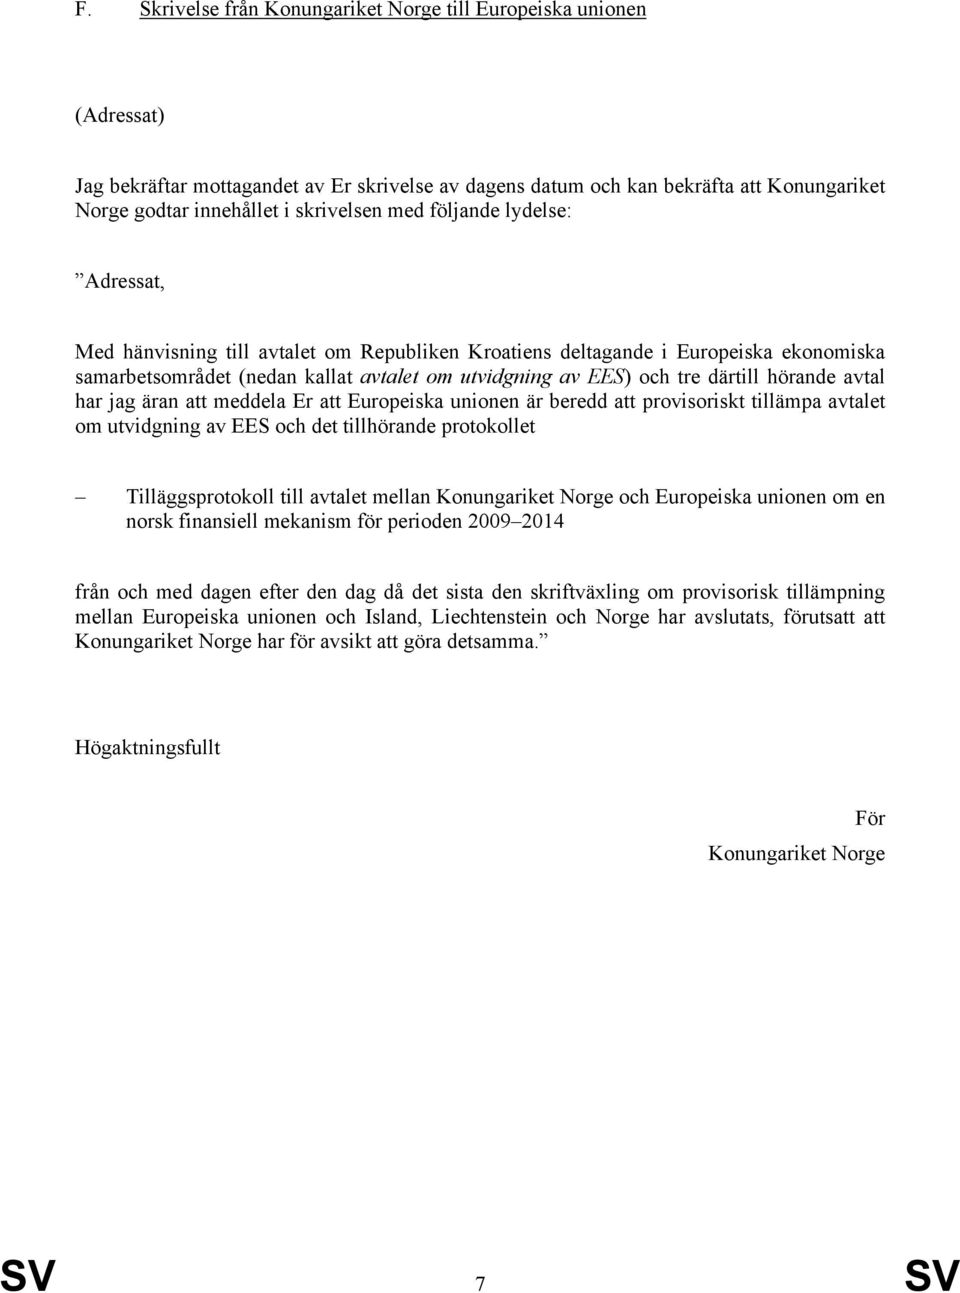 tillämpa avtalet om utvidgning av EES och det tillhörande protokollet Tilläggsprotokoll till avtalet mellan Konungariket Norge och Europeiska unionen om en norsk finansiell mekanism för perioden 2009